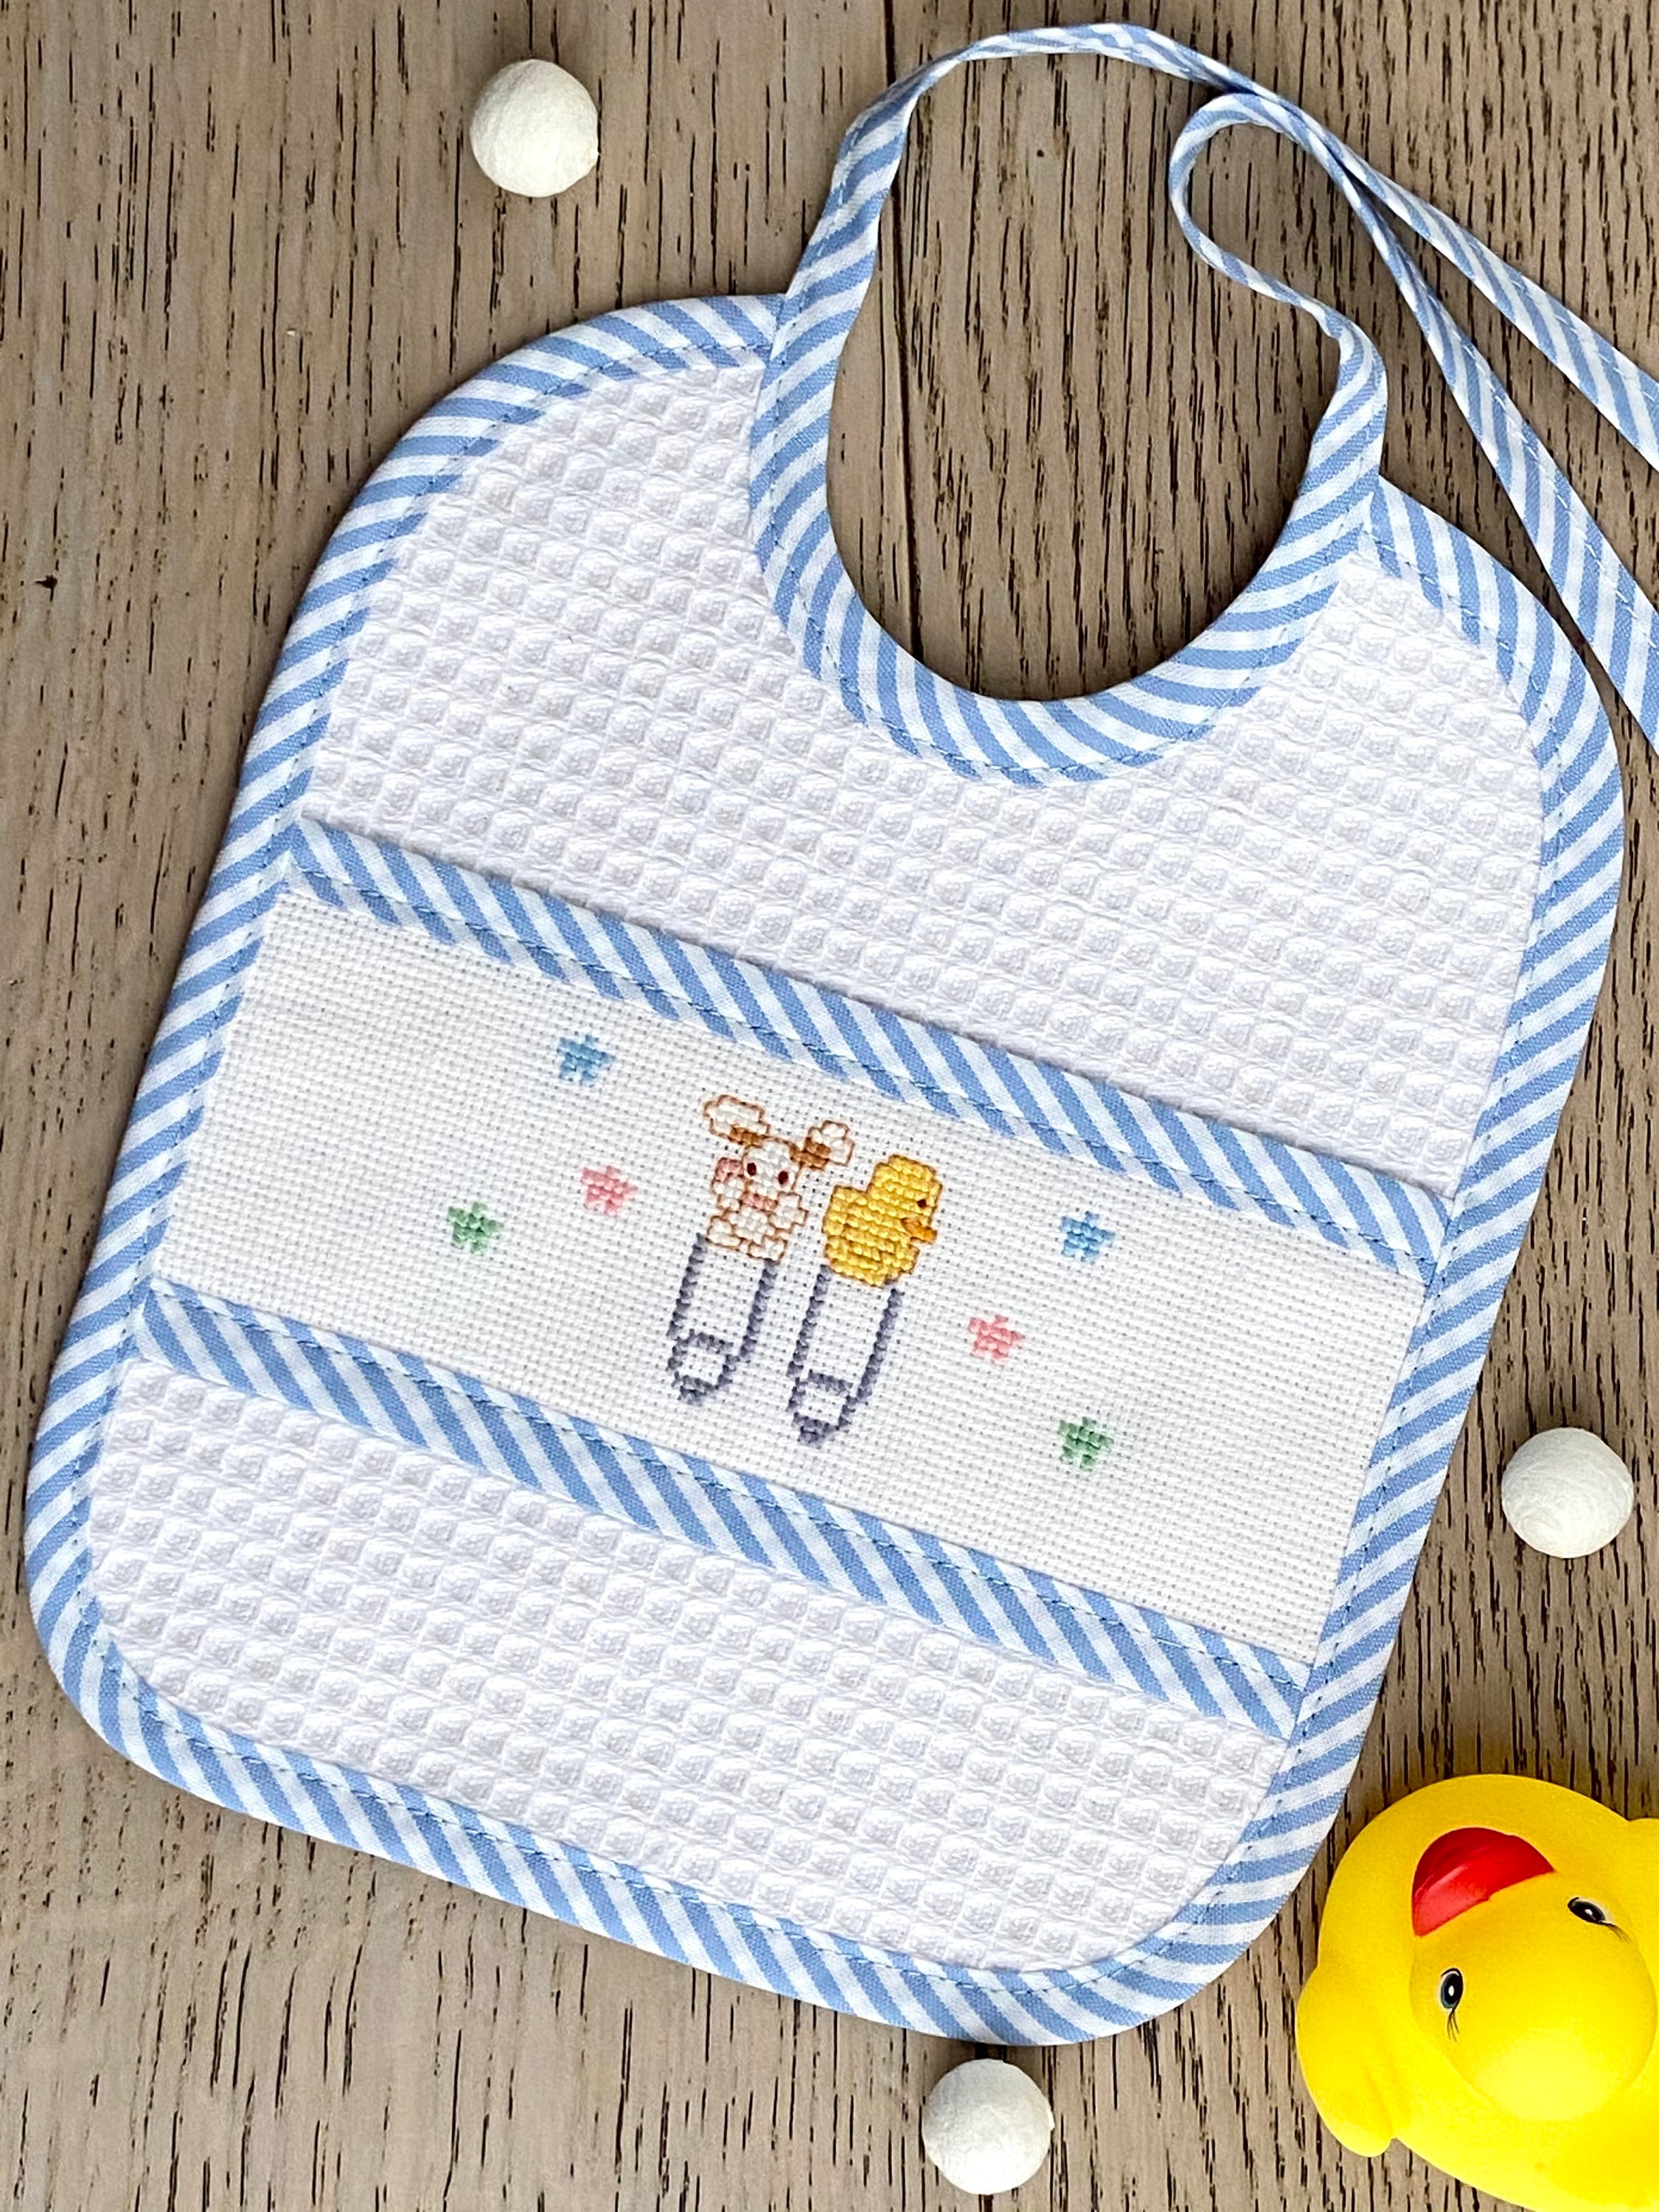 Babero para bebé, personalizado - Renacer Costuras